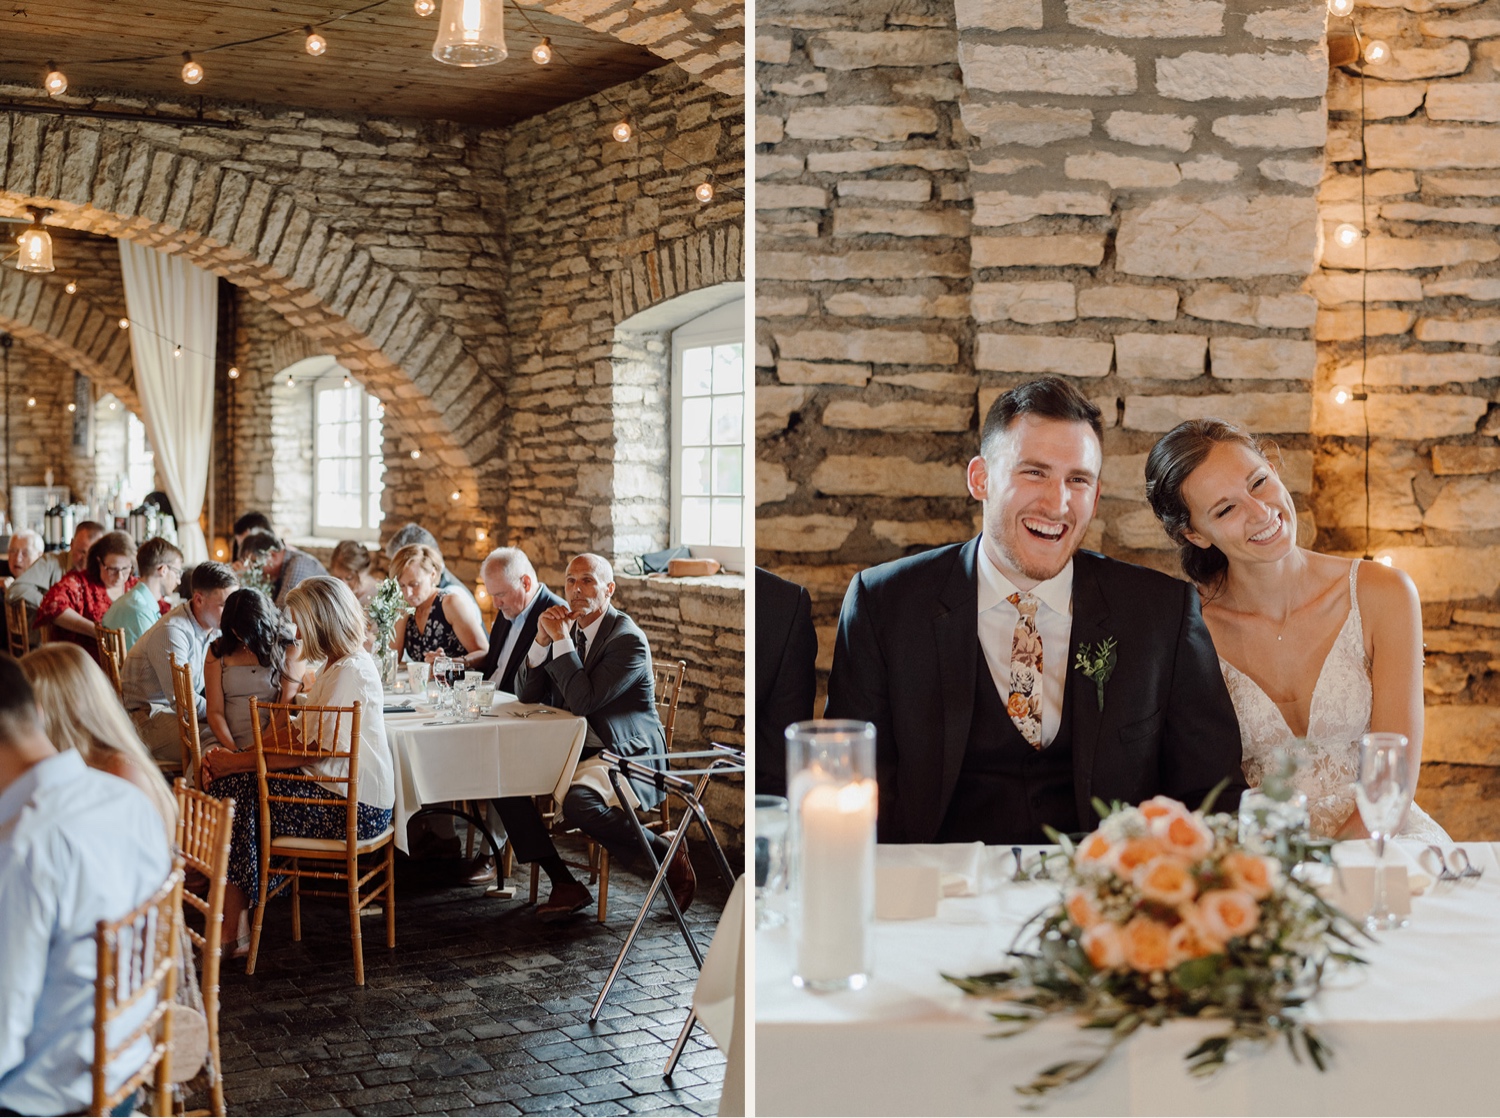 Mayowood Stone Barn wedding reception photos. 